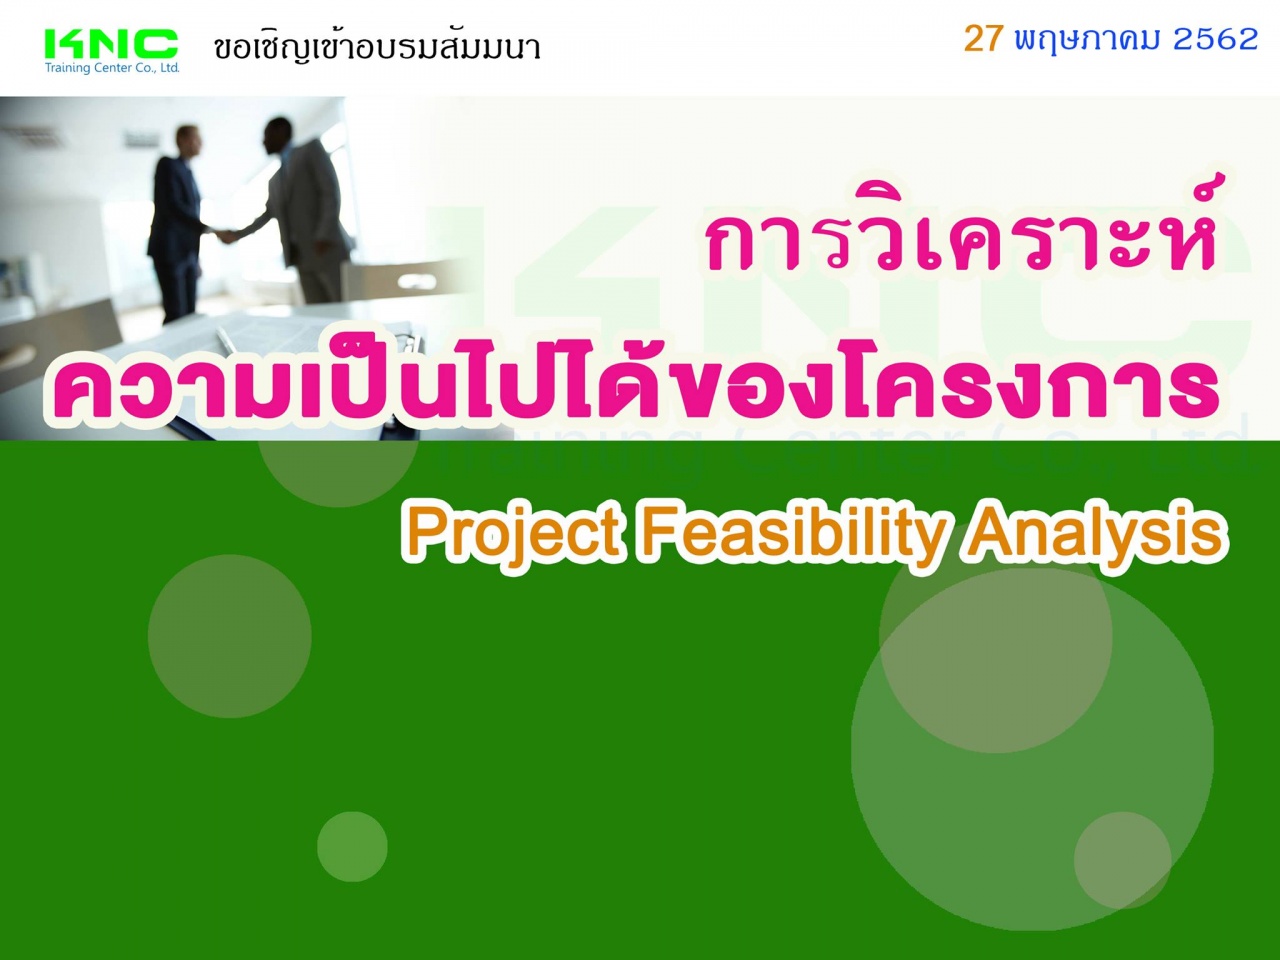 Project Feasibility Analysis : การวิเคราะห์ความเป็นไปได้ของโครงการ